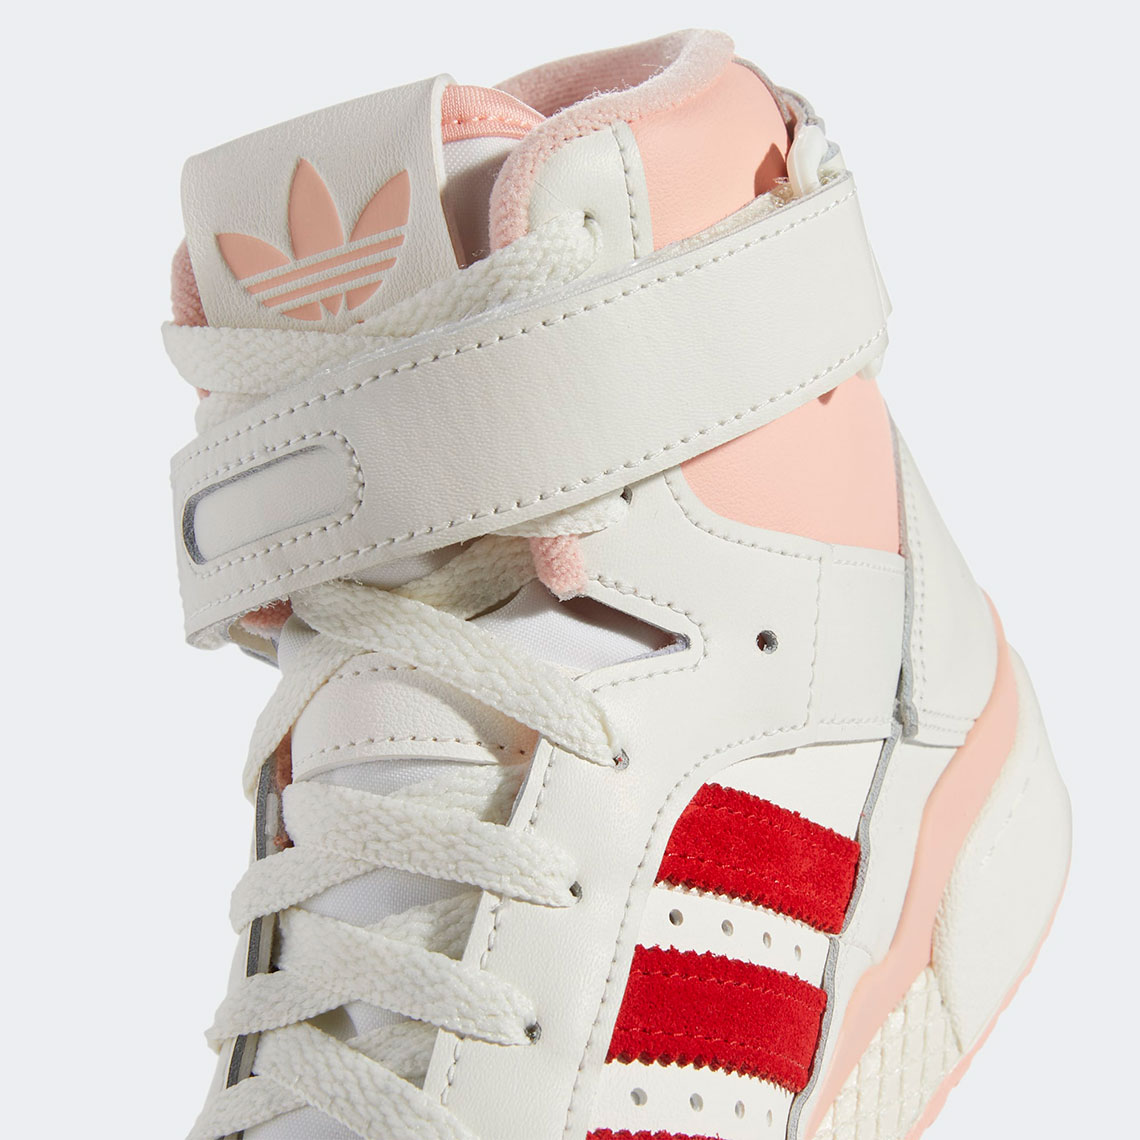 Adidas Forum 84 Hi Off White Pink Glow Vivid Red H01670 8